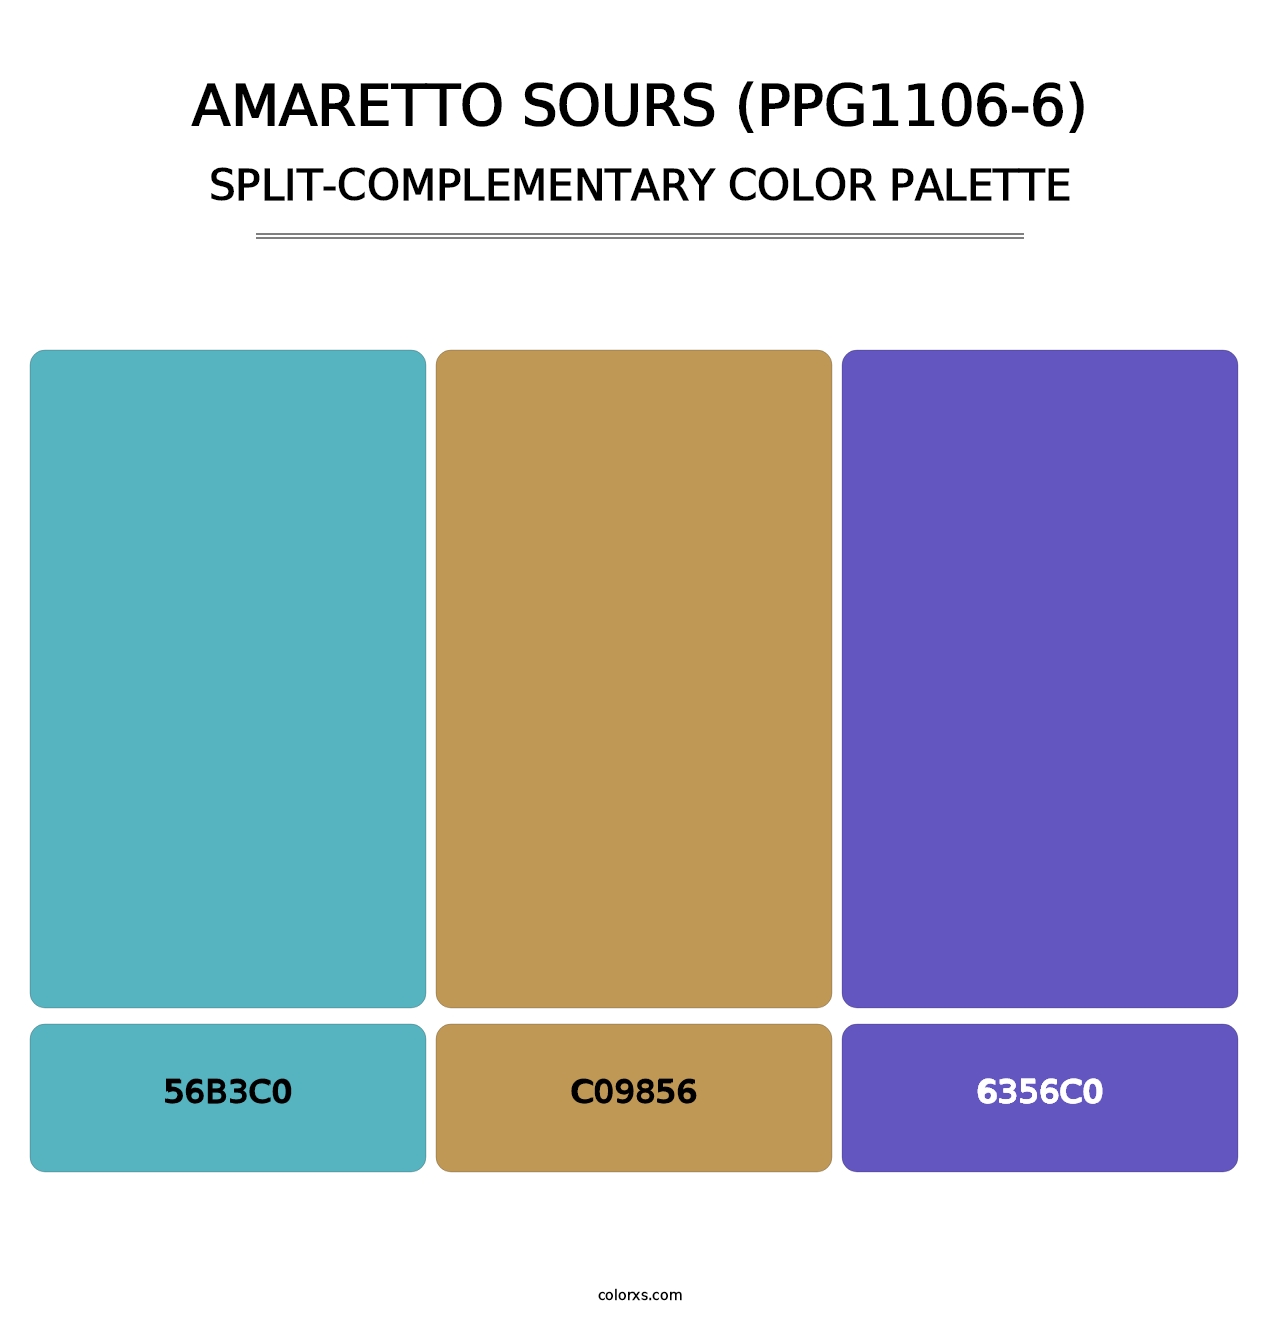 Amaretto Sours (PPG1106-6) - Split-Complementary Color Palette